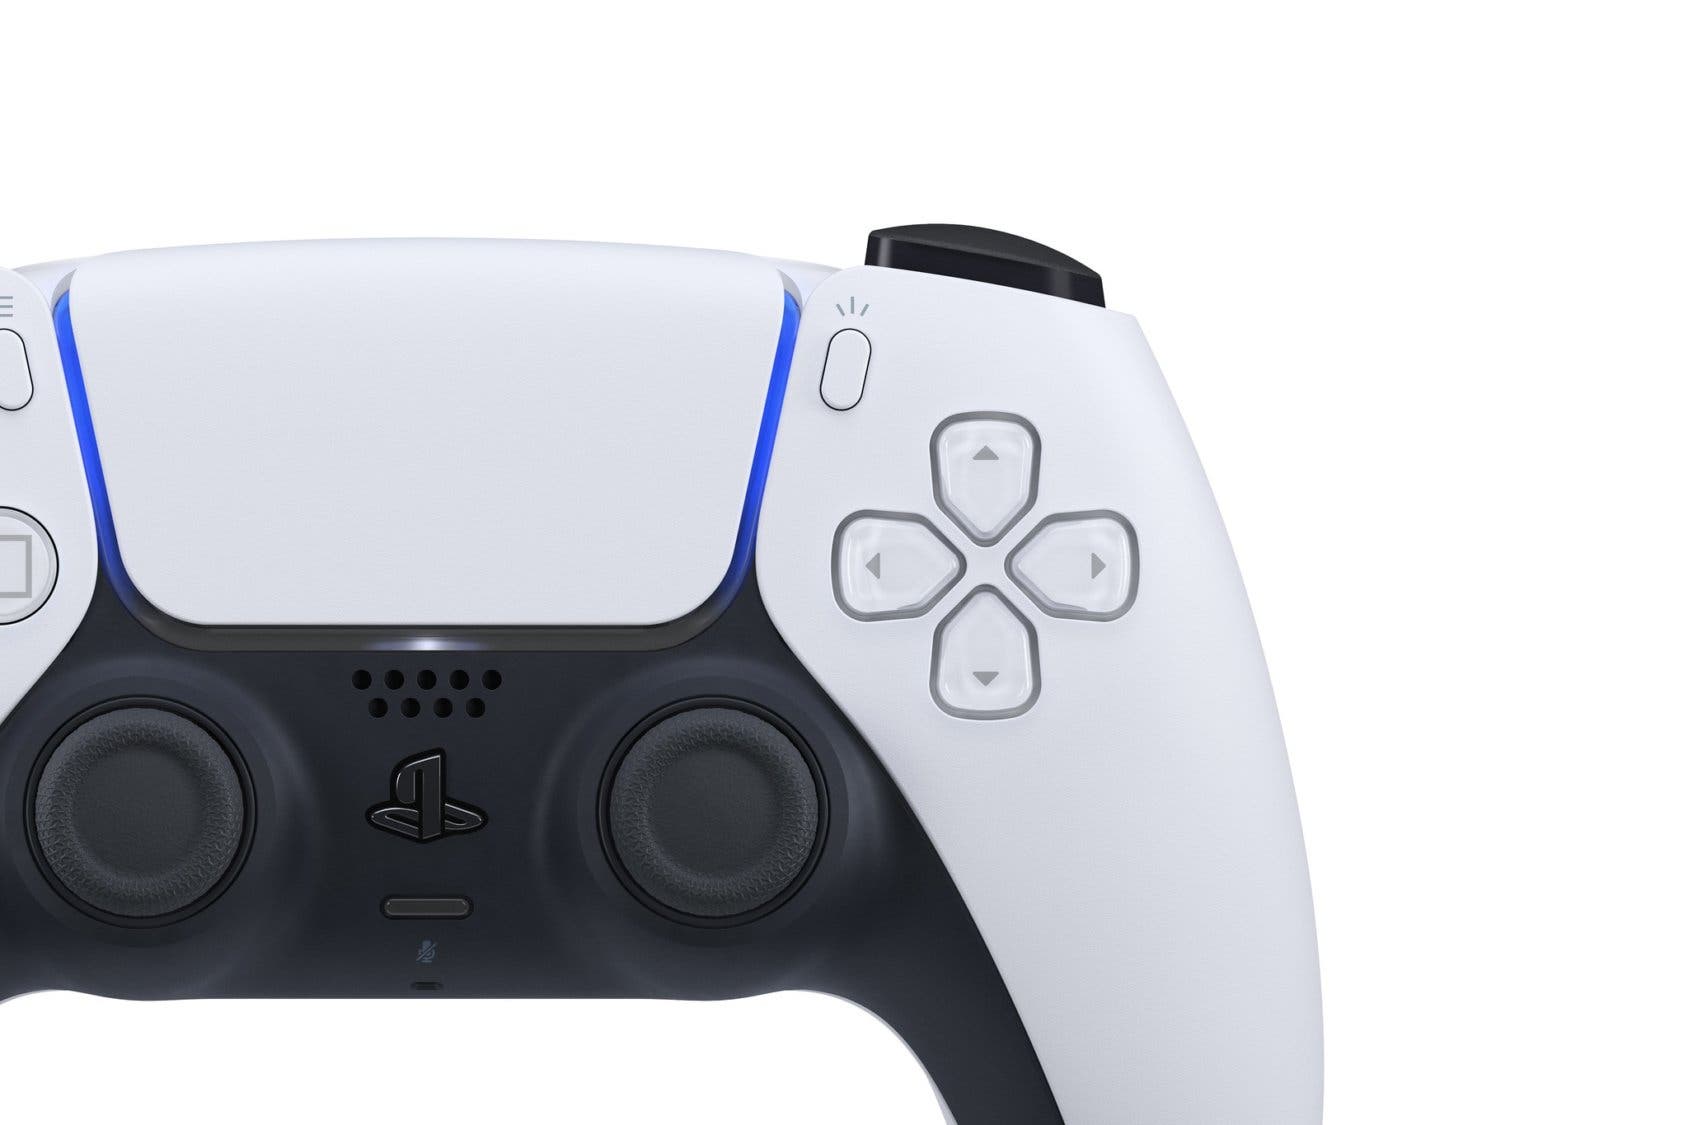 En detalle los joystick de DualSense, el mando de PlayStation 5